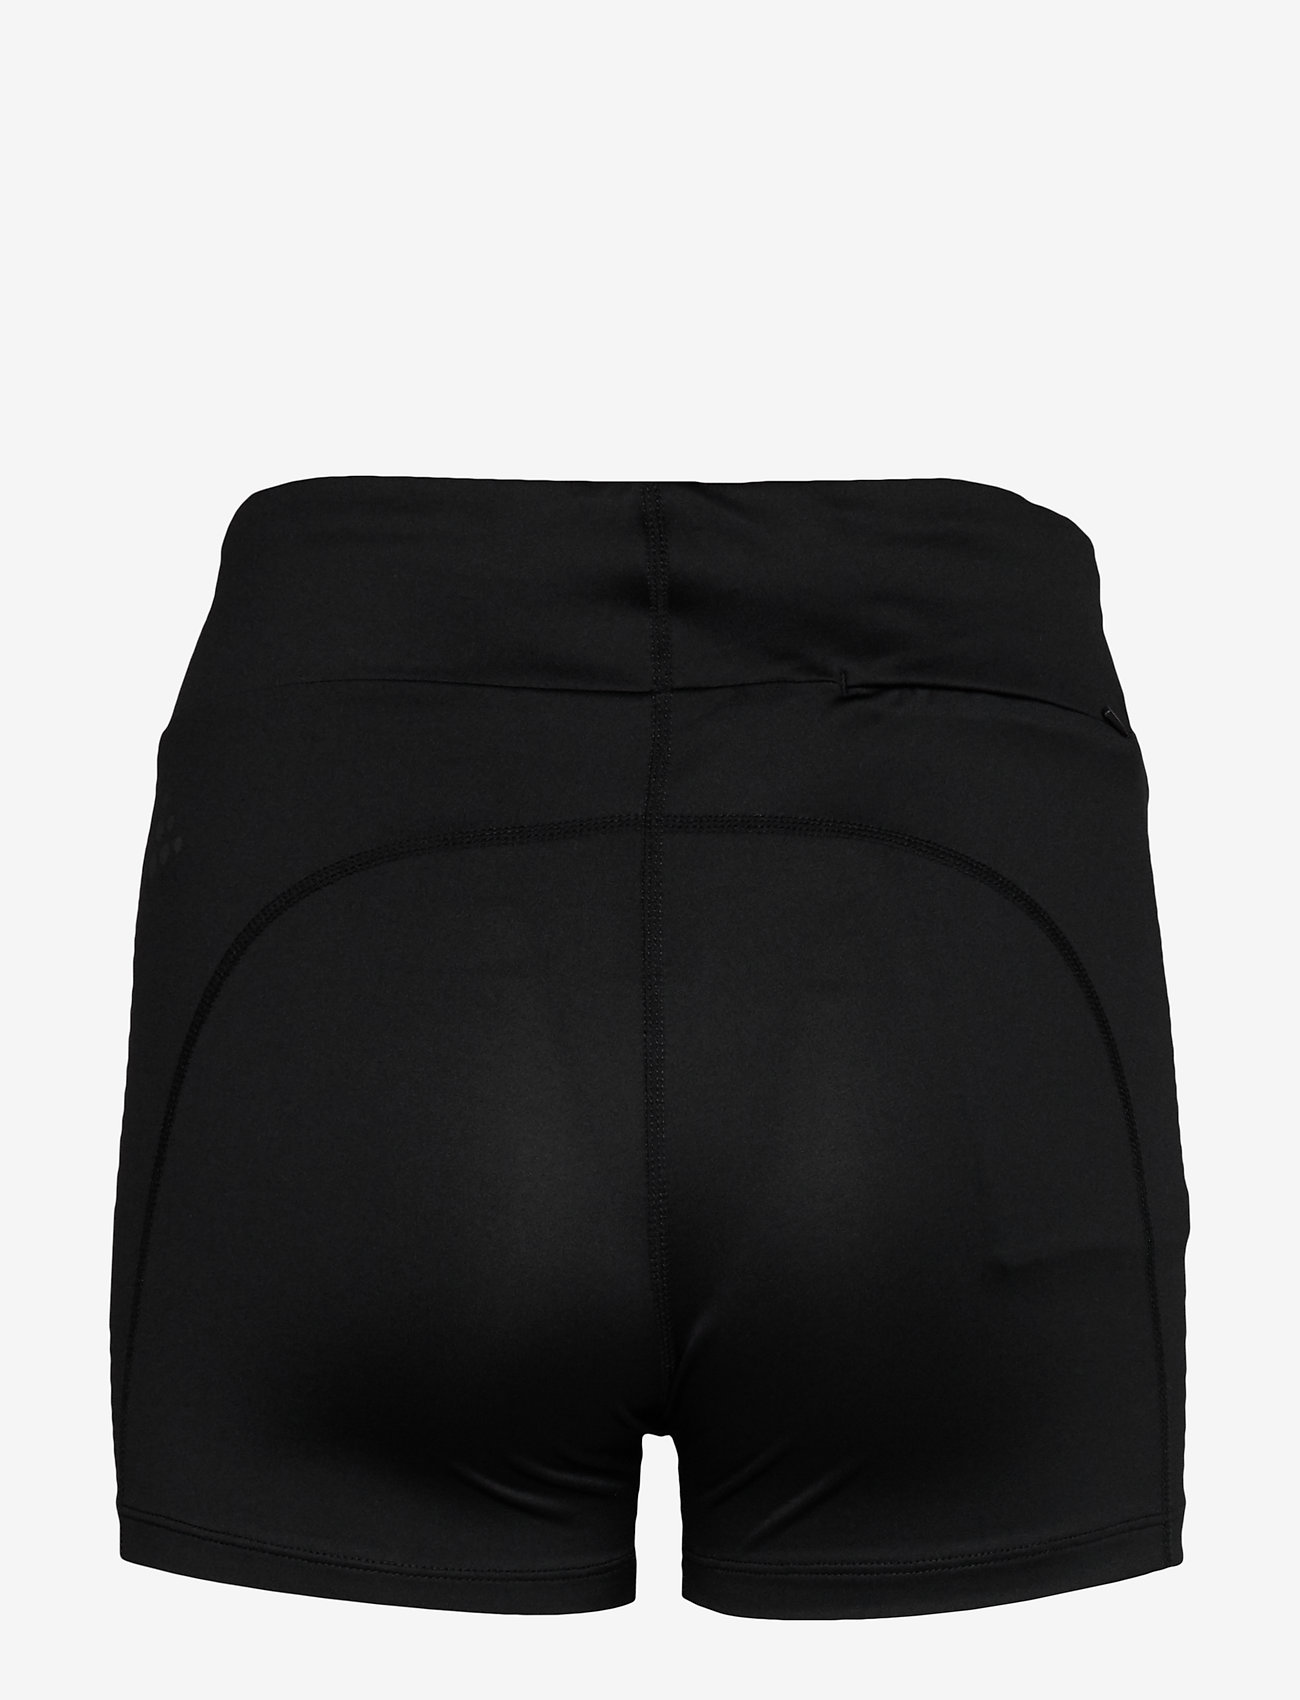 Craft - Adv Essence Hot Pant Tights W - die niedrigsten preise - black - 1